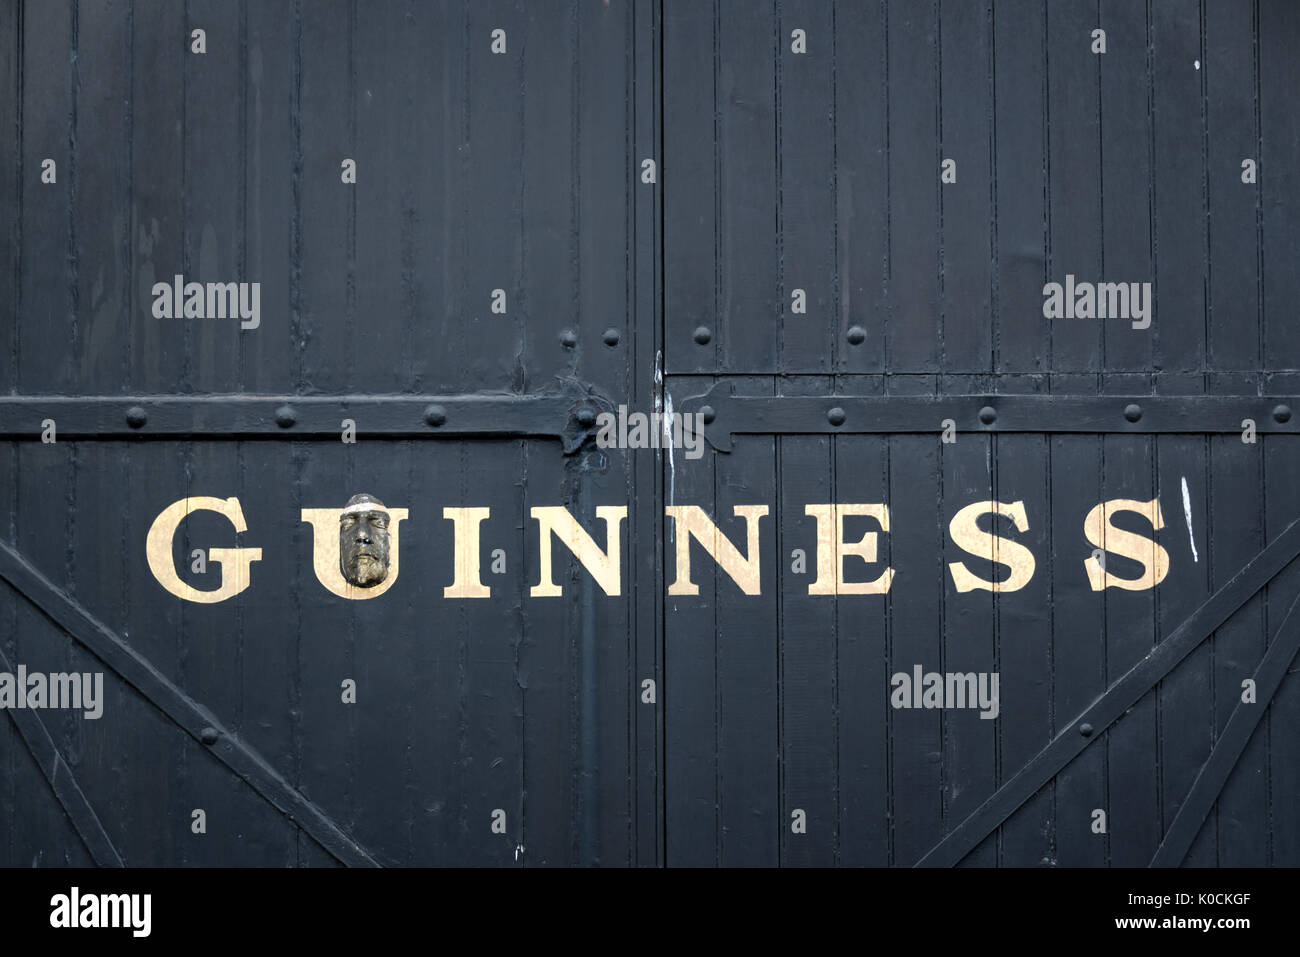 Dublín, Irlanda - 14 de agosto: Gate en la cervecería Guinness Brewery. La Guinness Storehouse es una popular atracción turística de Dublín Foto de stock